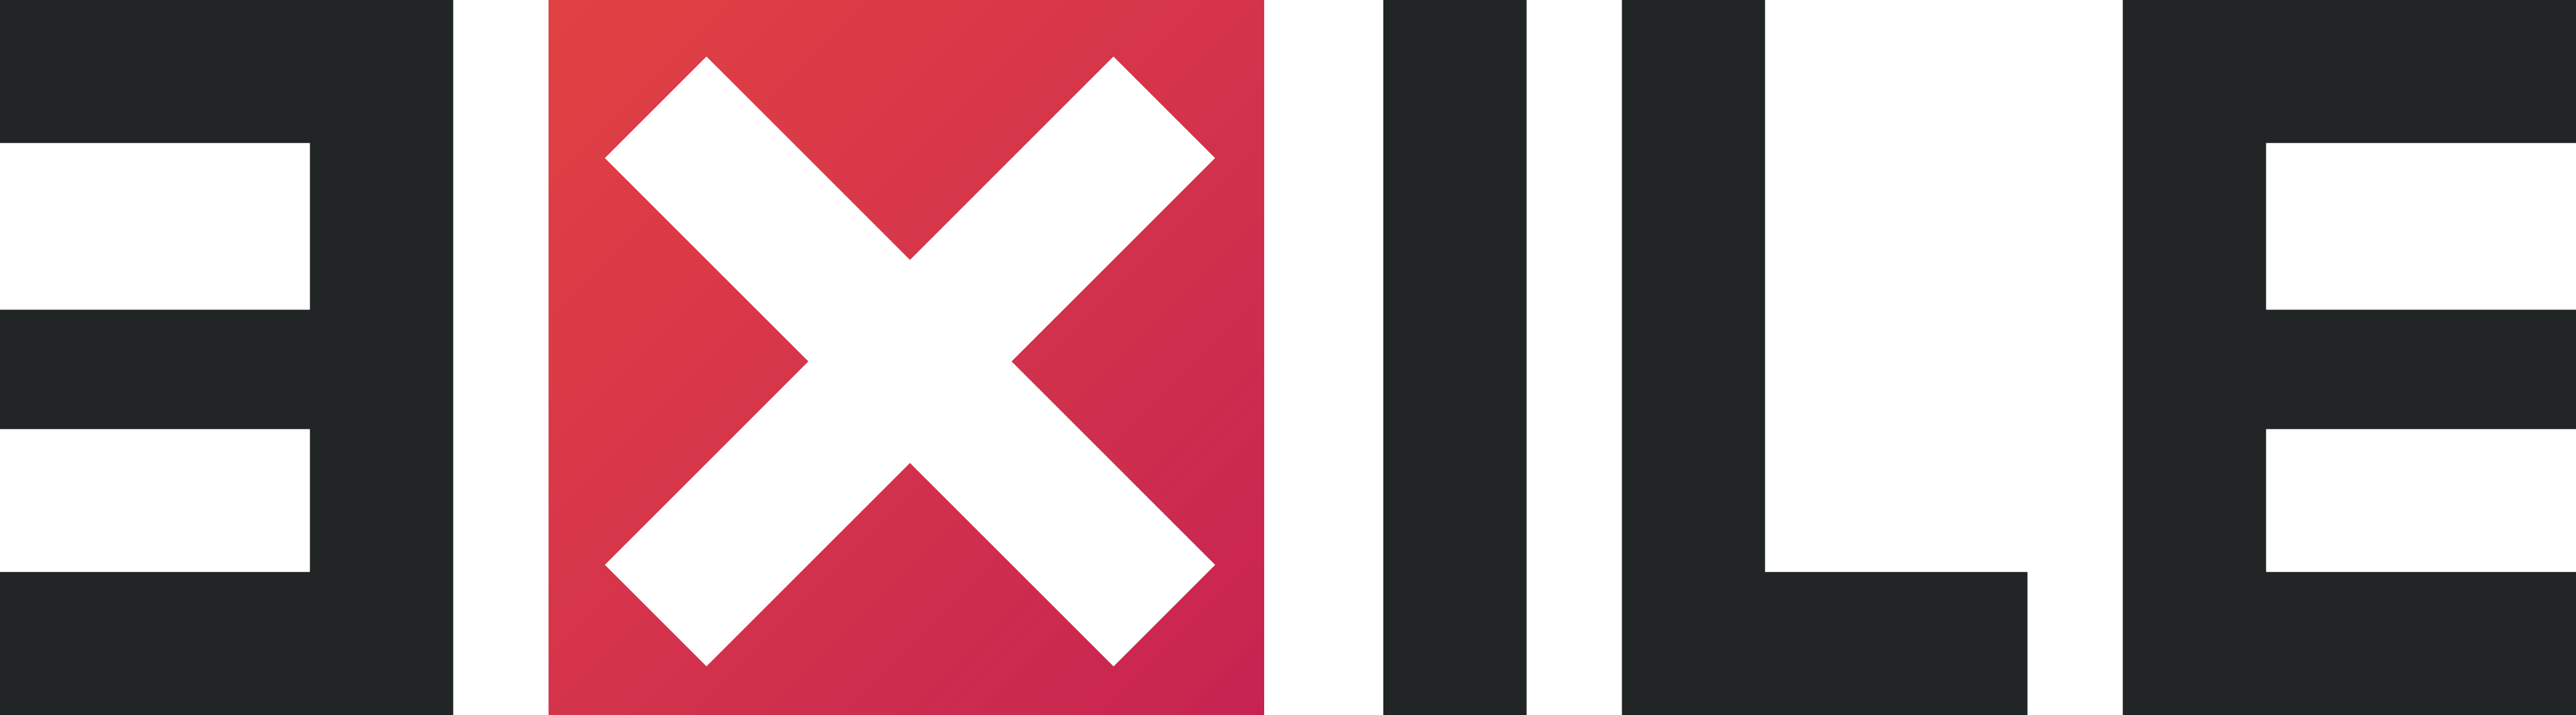 exile-mod-logo